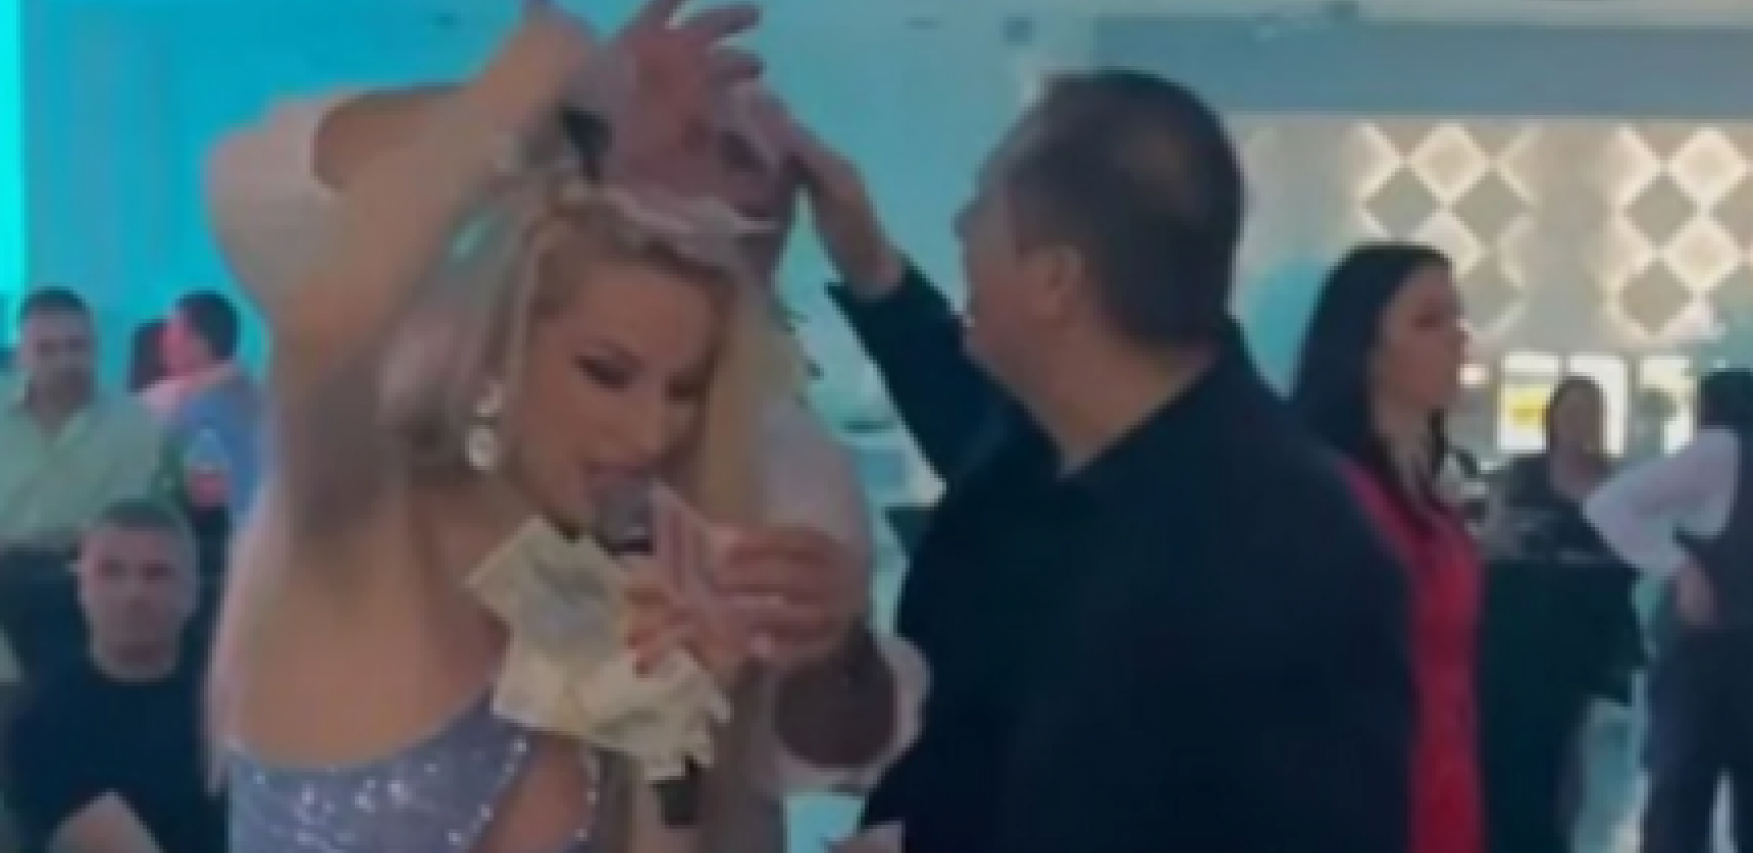 KRALJICA BAKŠIŠA Radi Manojlović na jednoj proslavi padale novčanice sa glave, a ona poručuje "Razvesele narod, pa im sve pare daju" (FOTO)